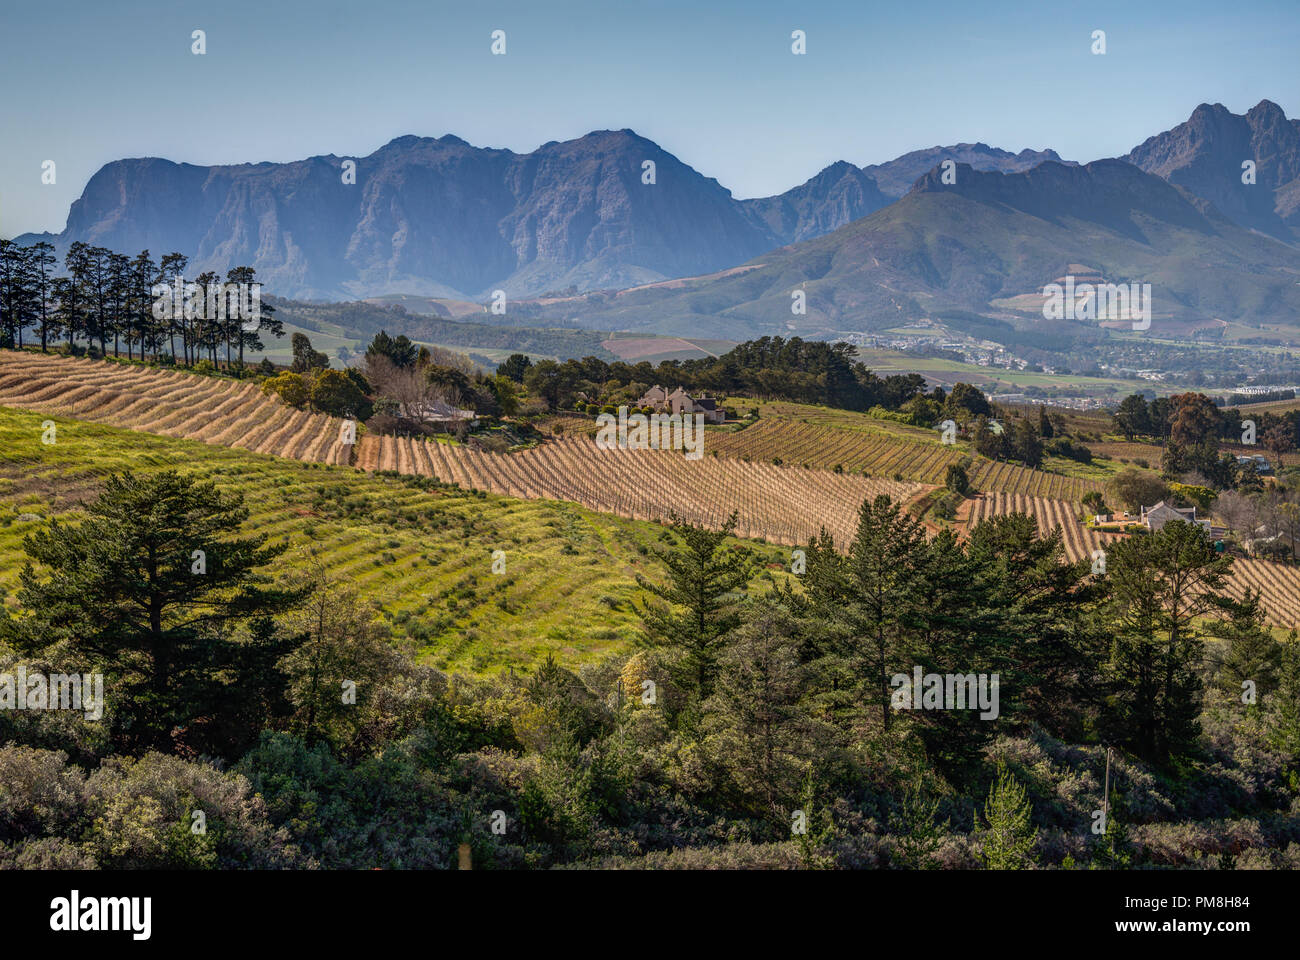 Devon valley vineyards, Stellenbosch, South Africa Stock Photo